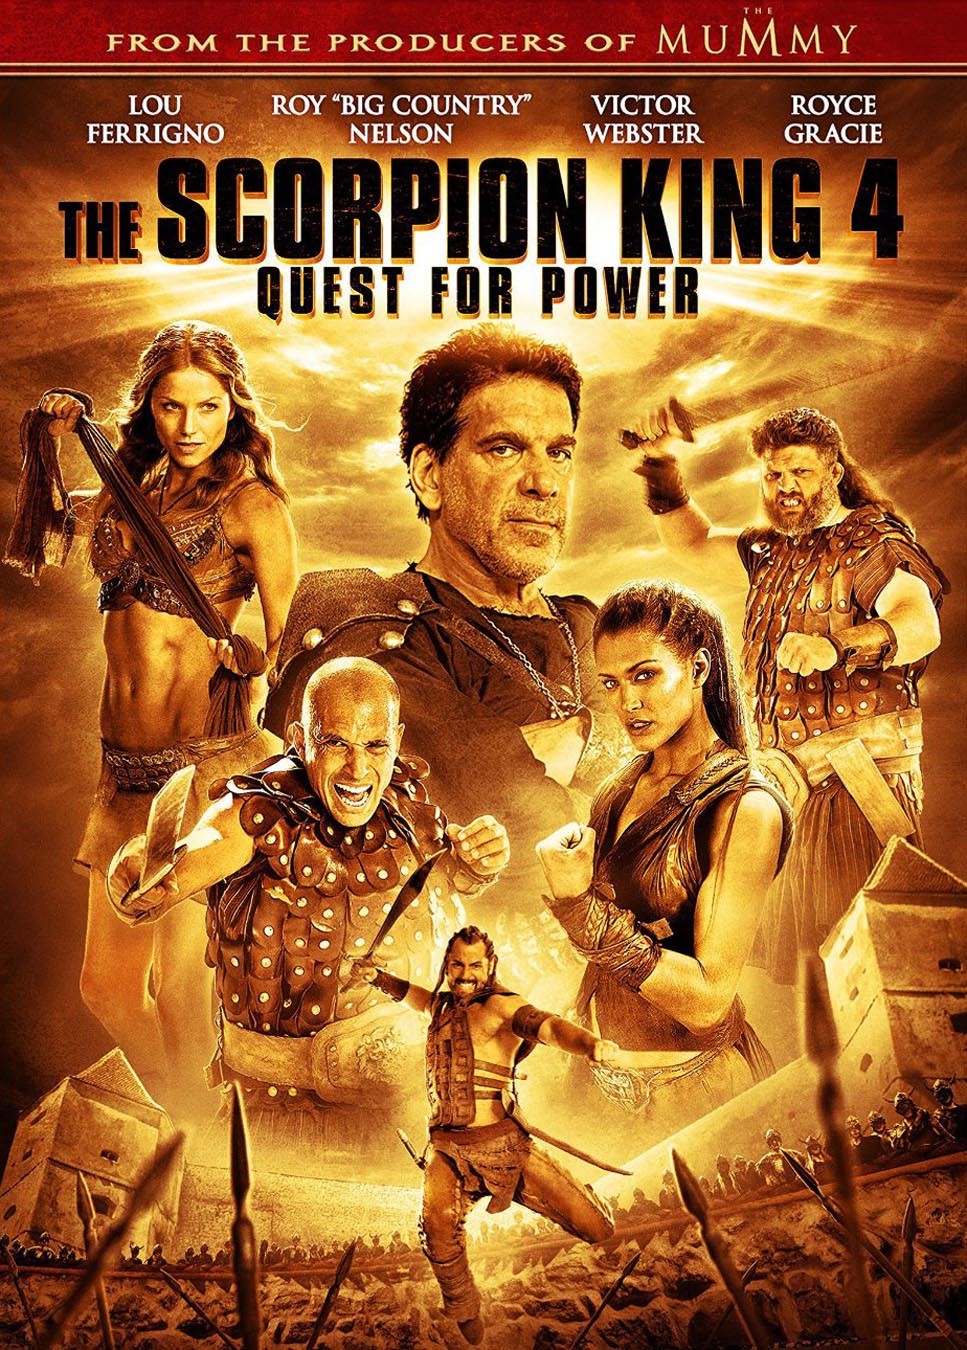 Царь скорпионов 4: Утерянный трон / The Scorpion King 4: Quest for Power (2015) отзывы. Рецензии. Новости кино. Актеры фильма Царь скорпионов 4: Утерянный трон. Отзывы о фильме Царь скорпионов 4: Утерянный трон